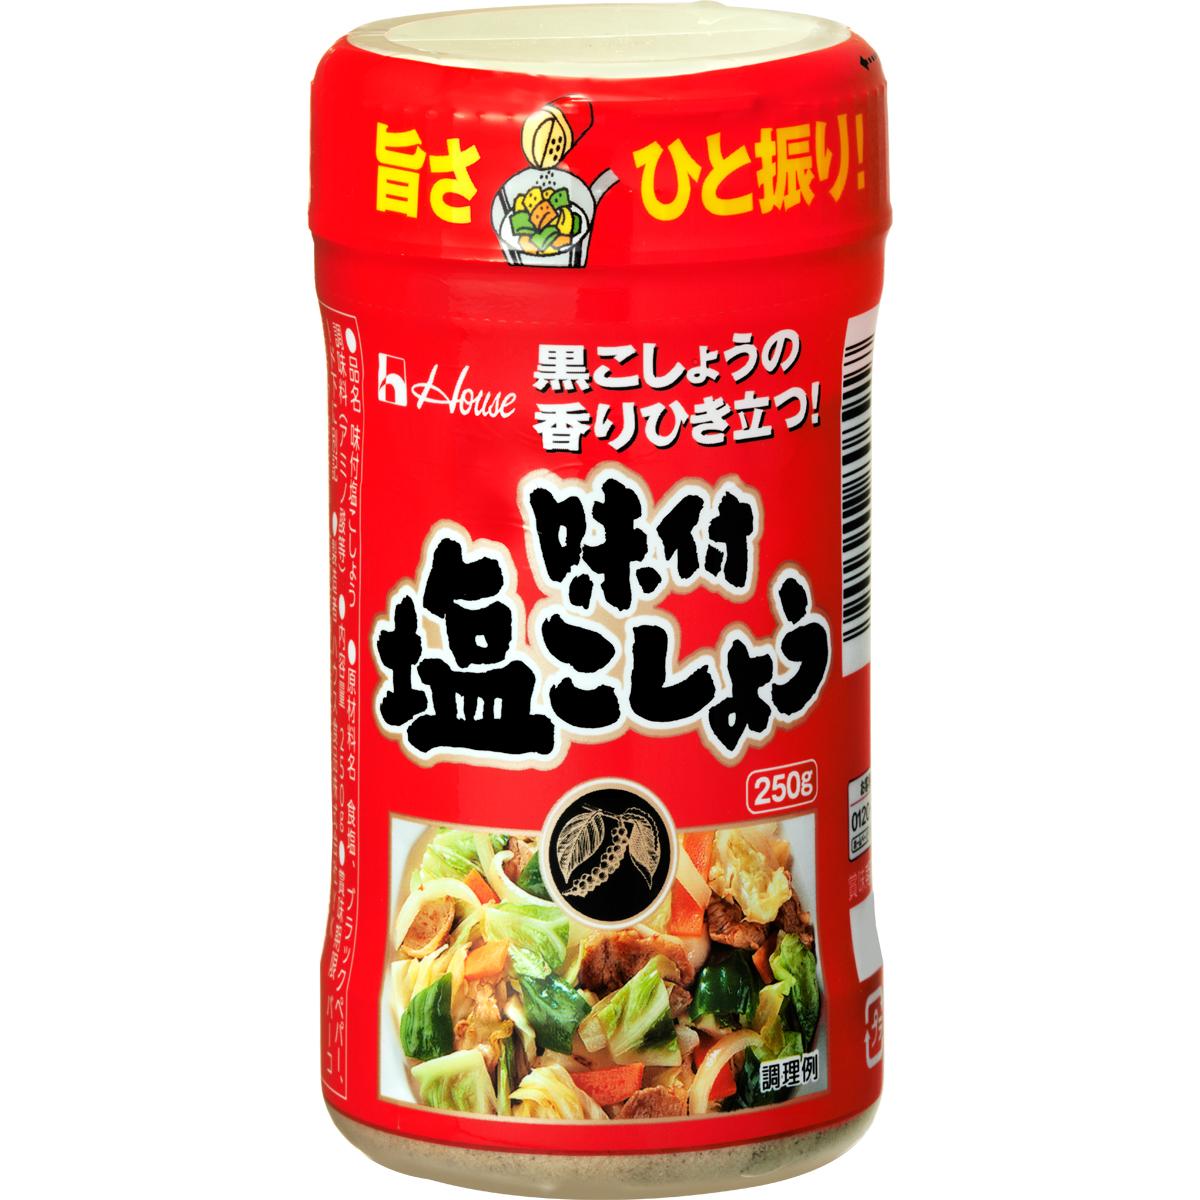 味付塩こしょう(九州) | 商品カタログトップ | ハウス食品